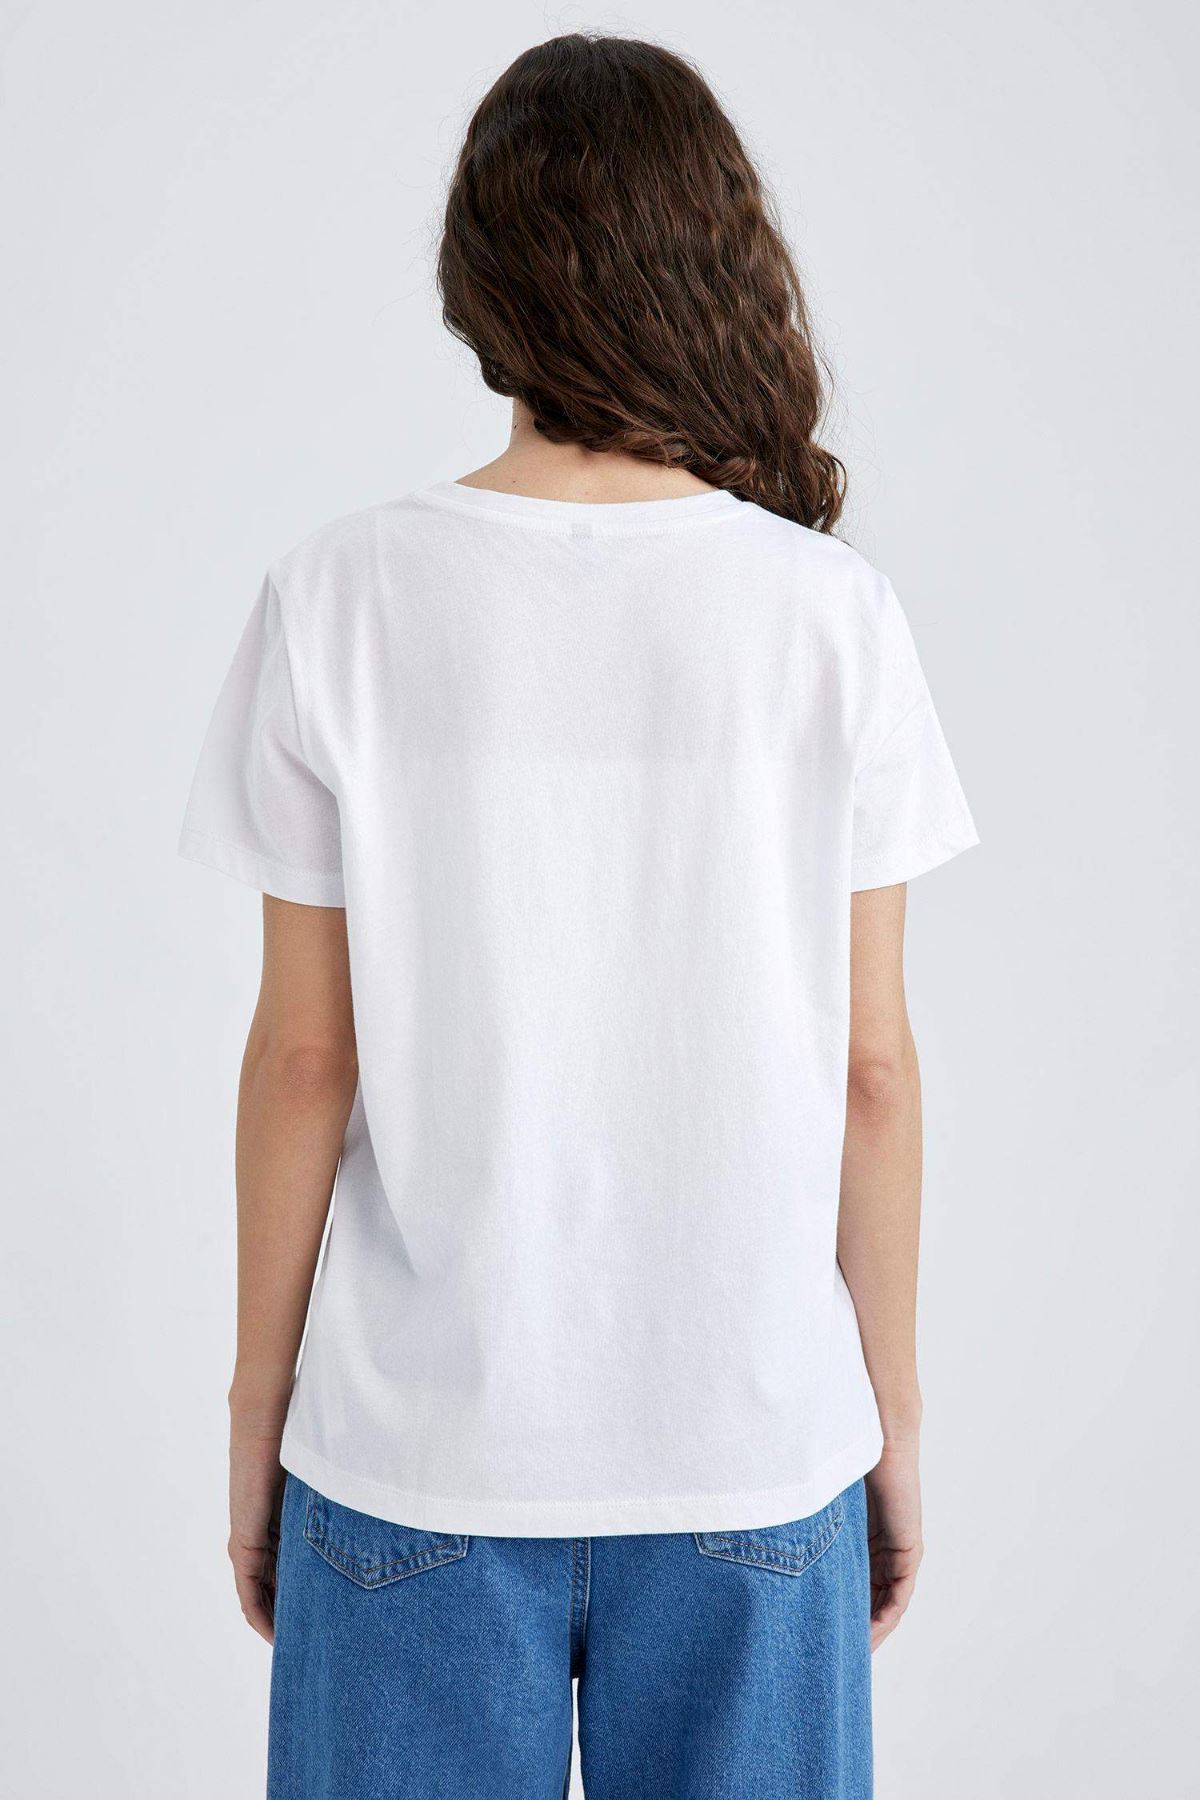 Defacto Kadın Beyaz Tişört - Z8365AZ/WT34